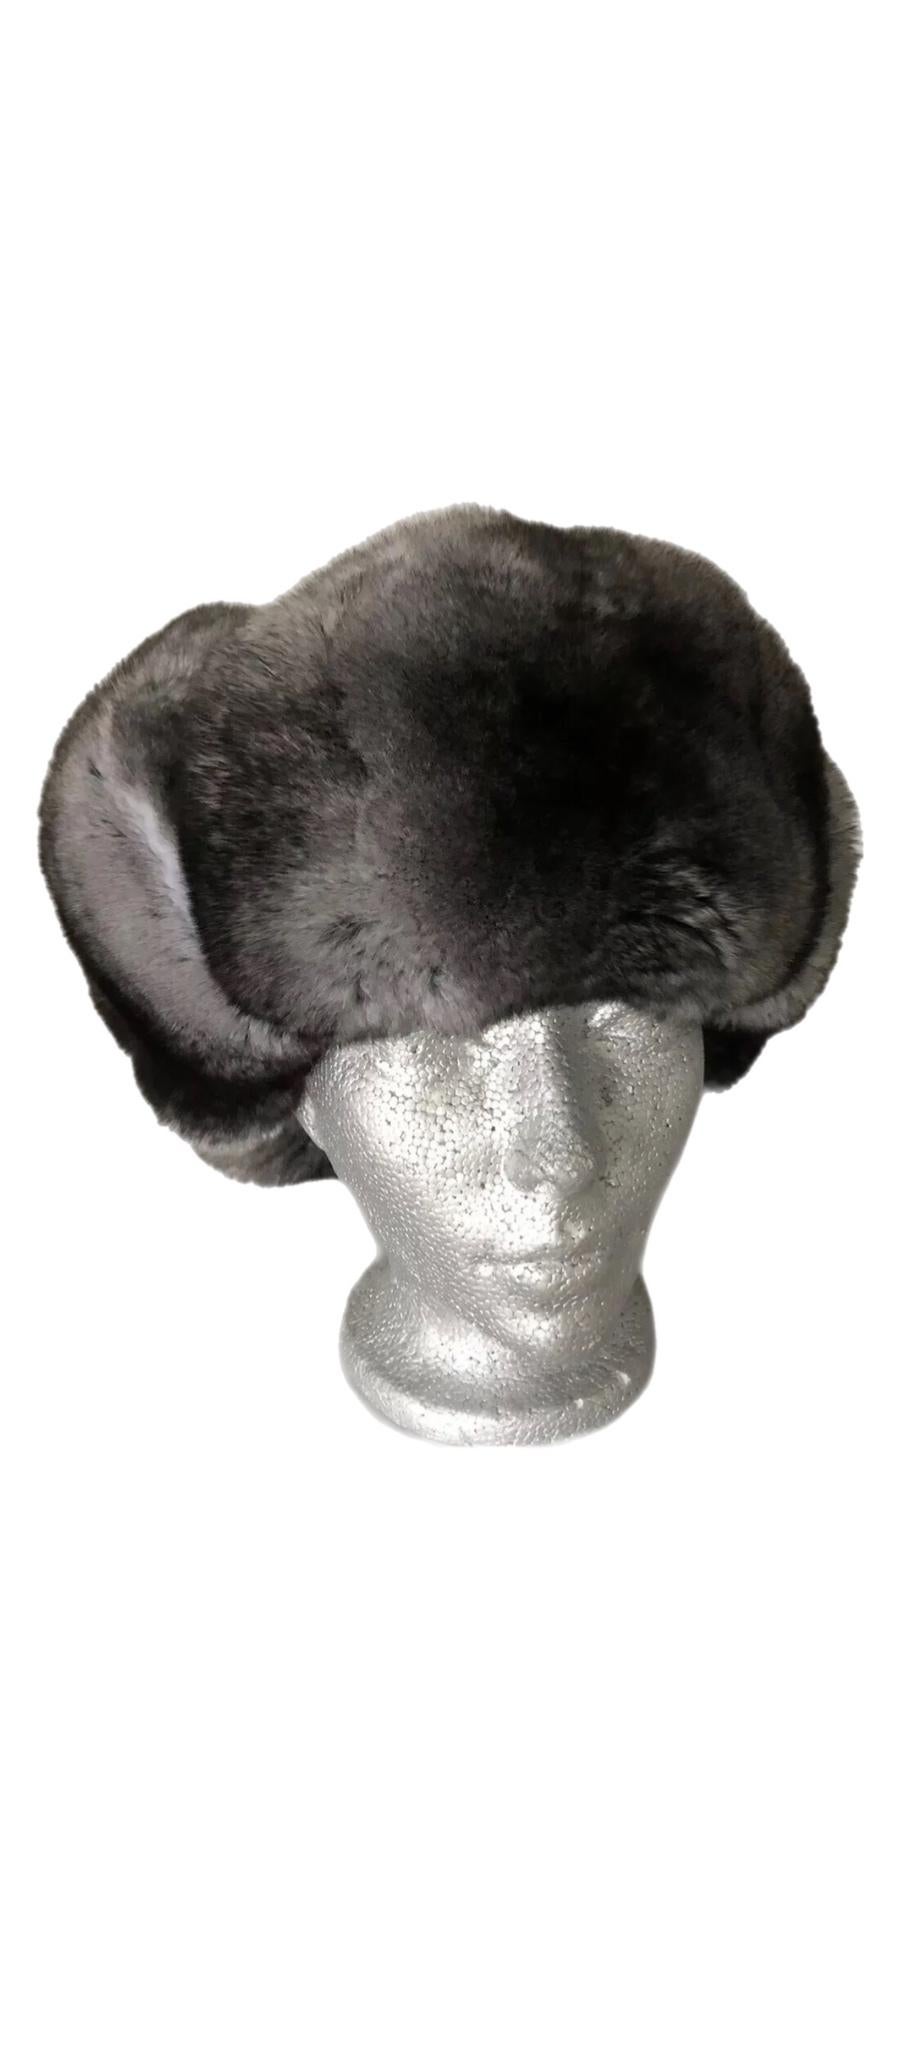 Chapeau en fourrure de chinchilla neuf (Taille - M)

Fabriqué au Canada 

Remarque : ce bonnet a été fabriqué avec des peaux de chinchilla européen de la meilleure qualité, qui sont extrêmement légères. Elles ont la densité capillaire la plus